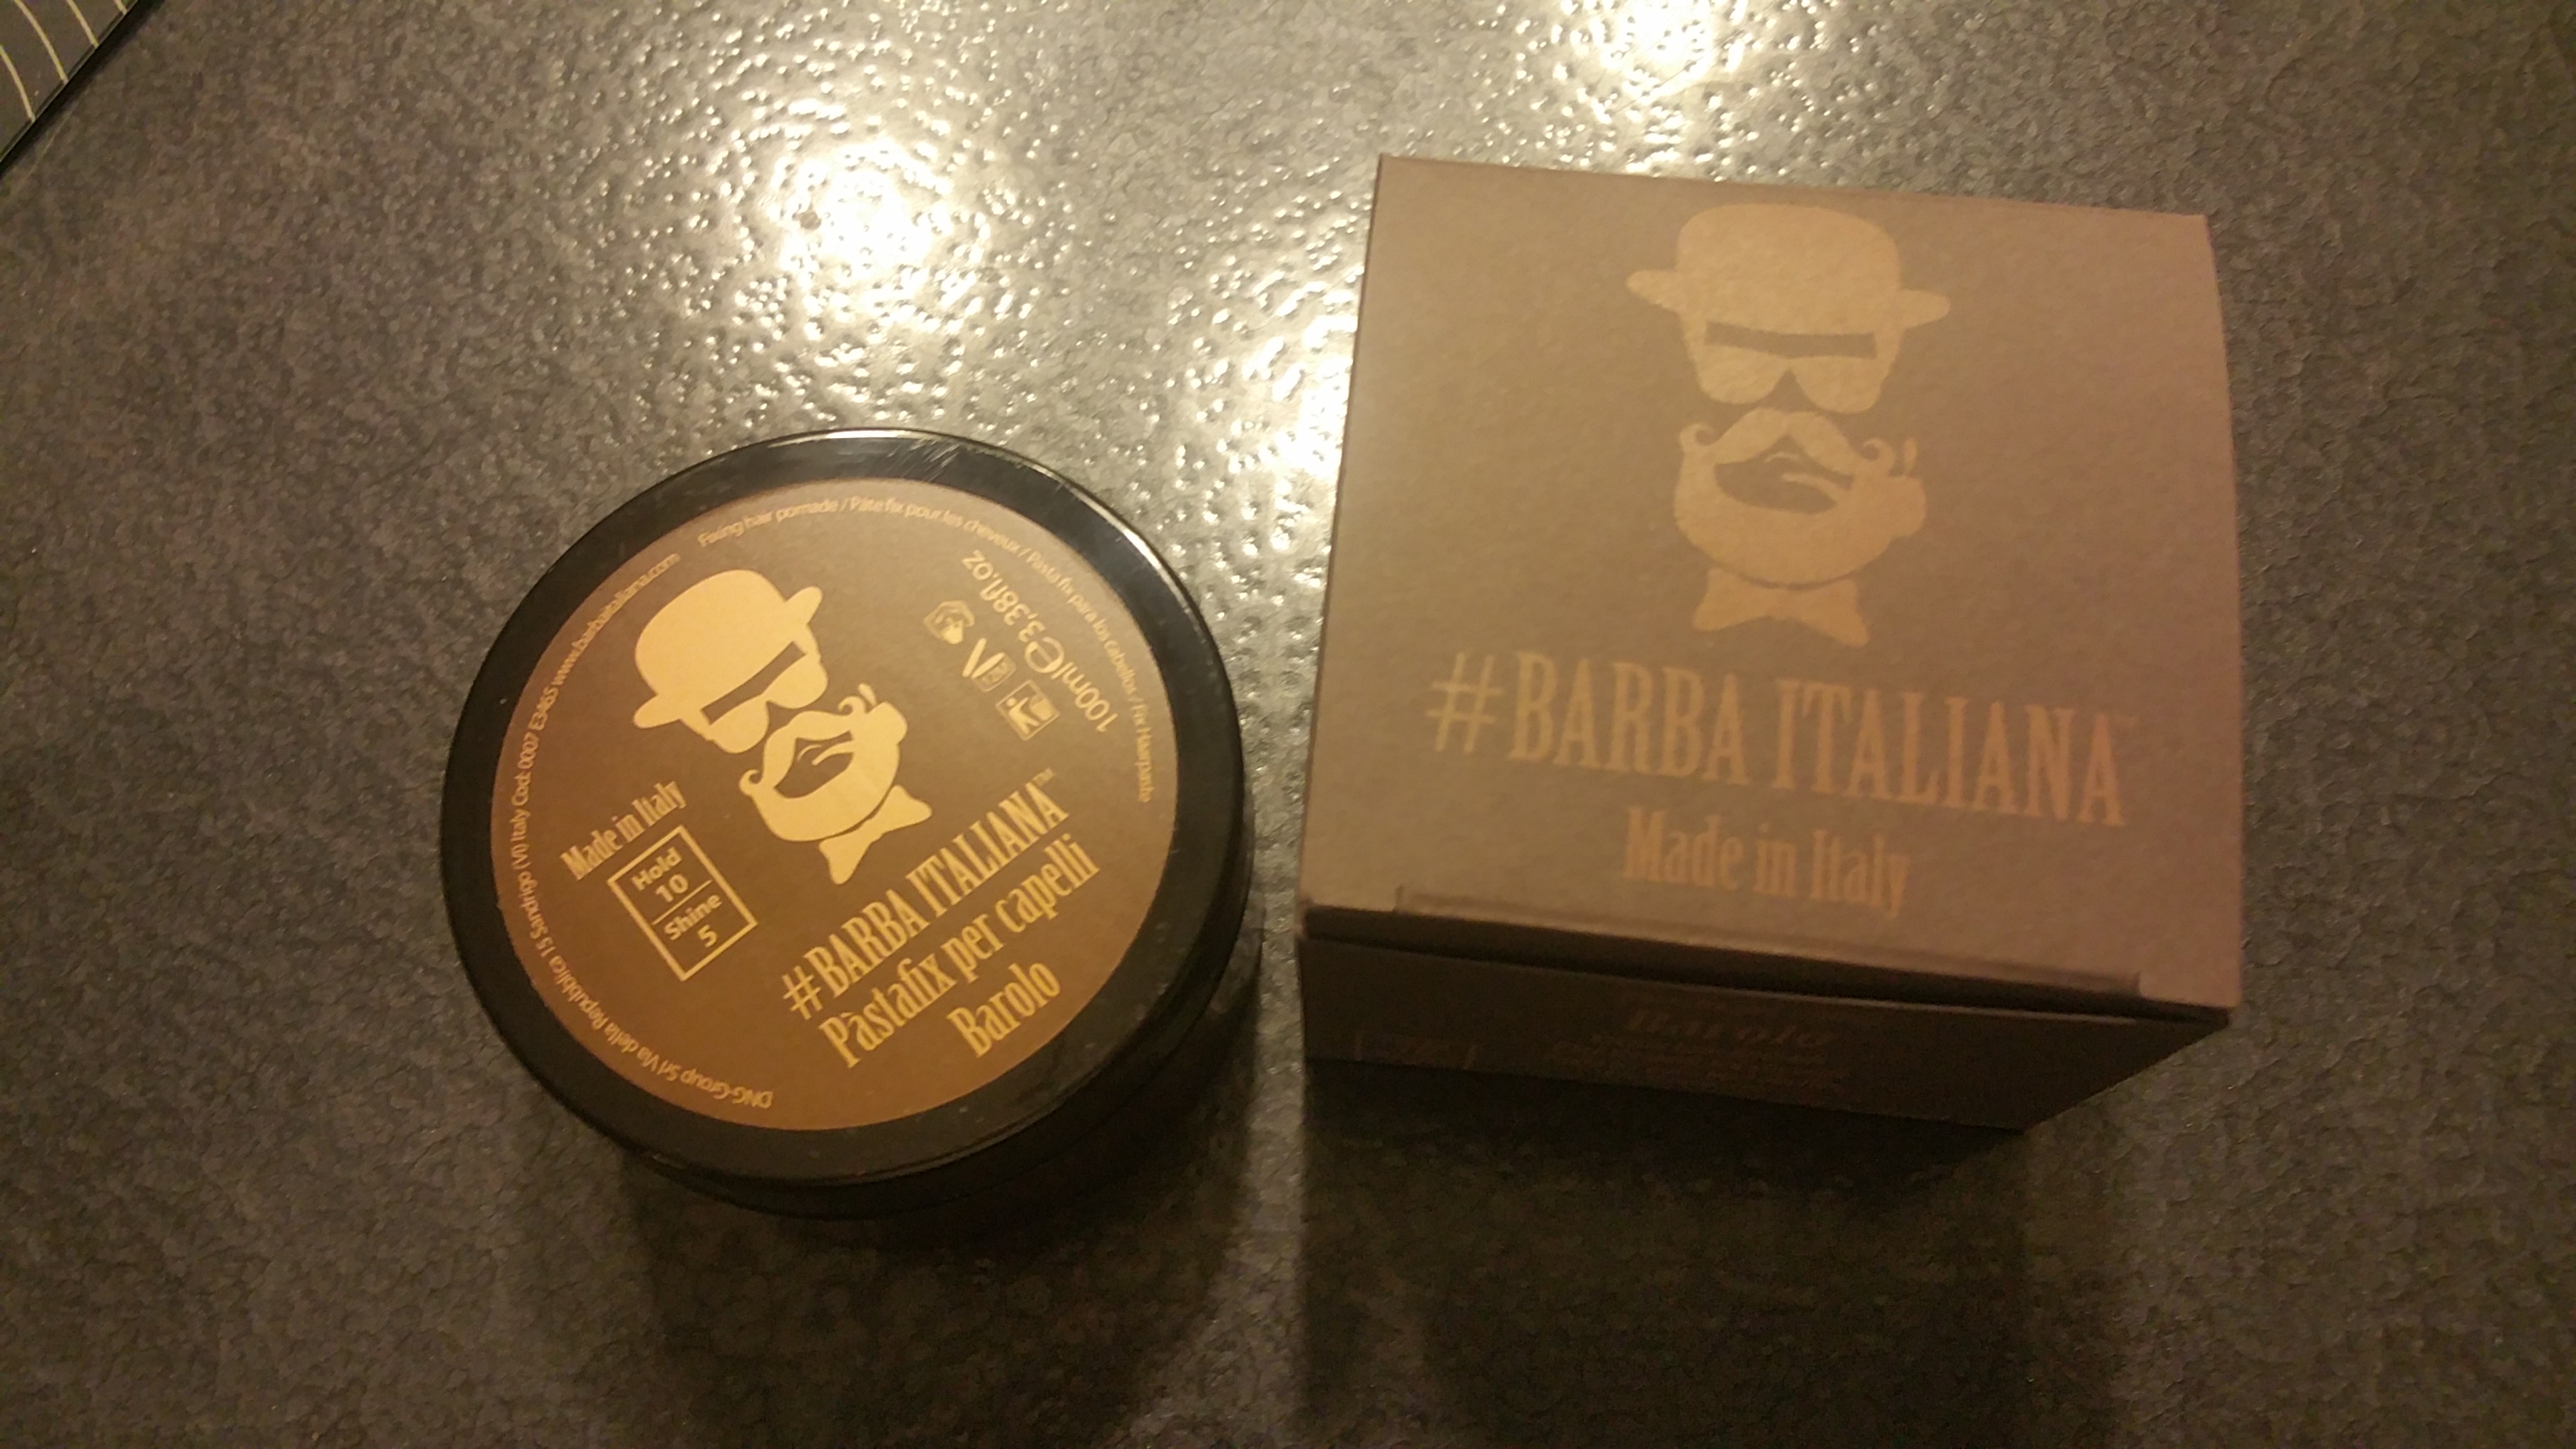 Barba Italiana Barolo